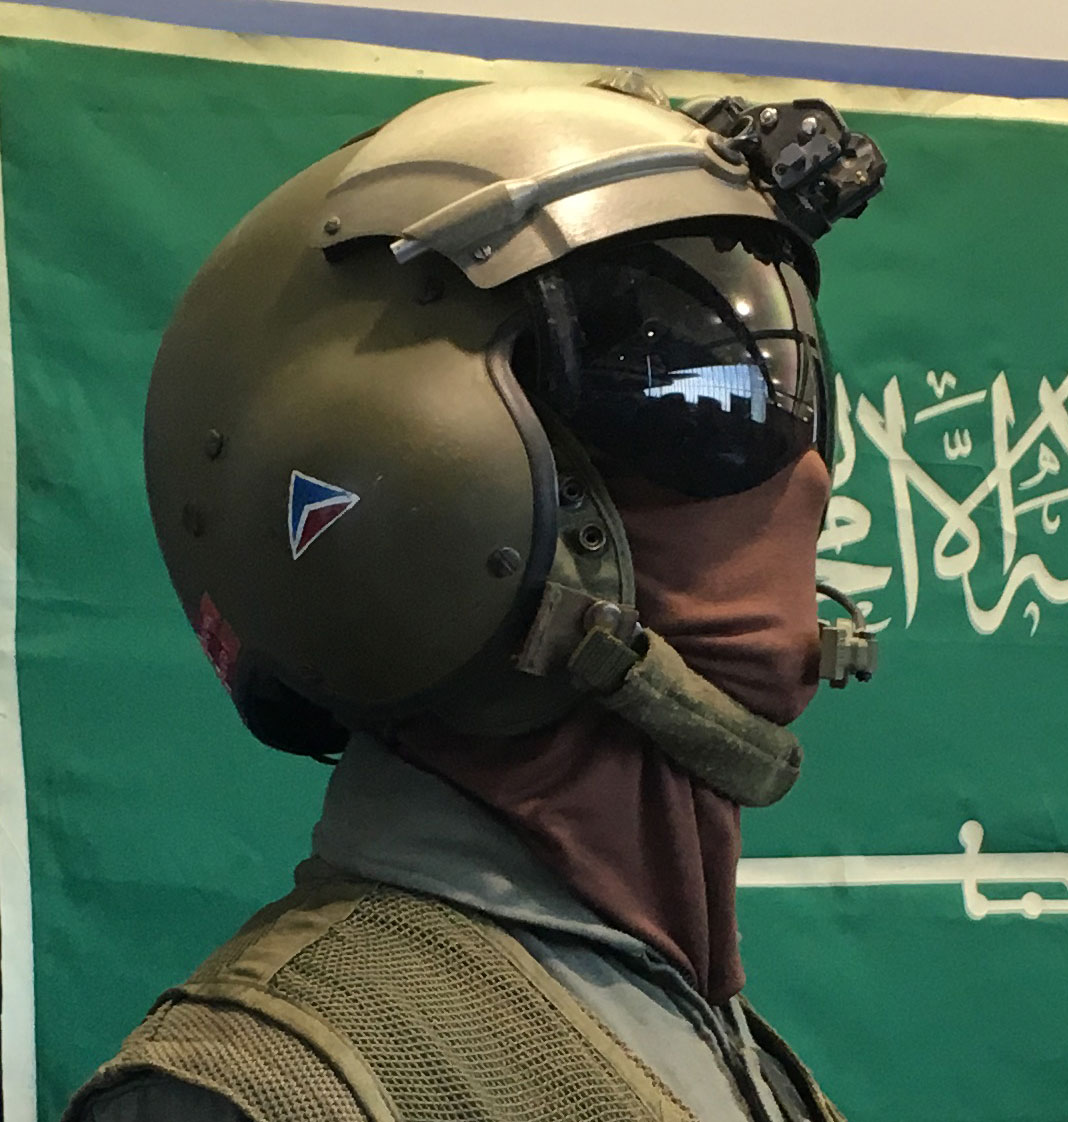 Image of Persian Gulf War Exhibit at the Delta Flight Museum showing flight helmet with Delta widget